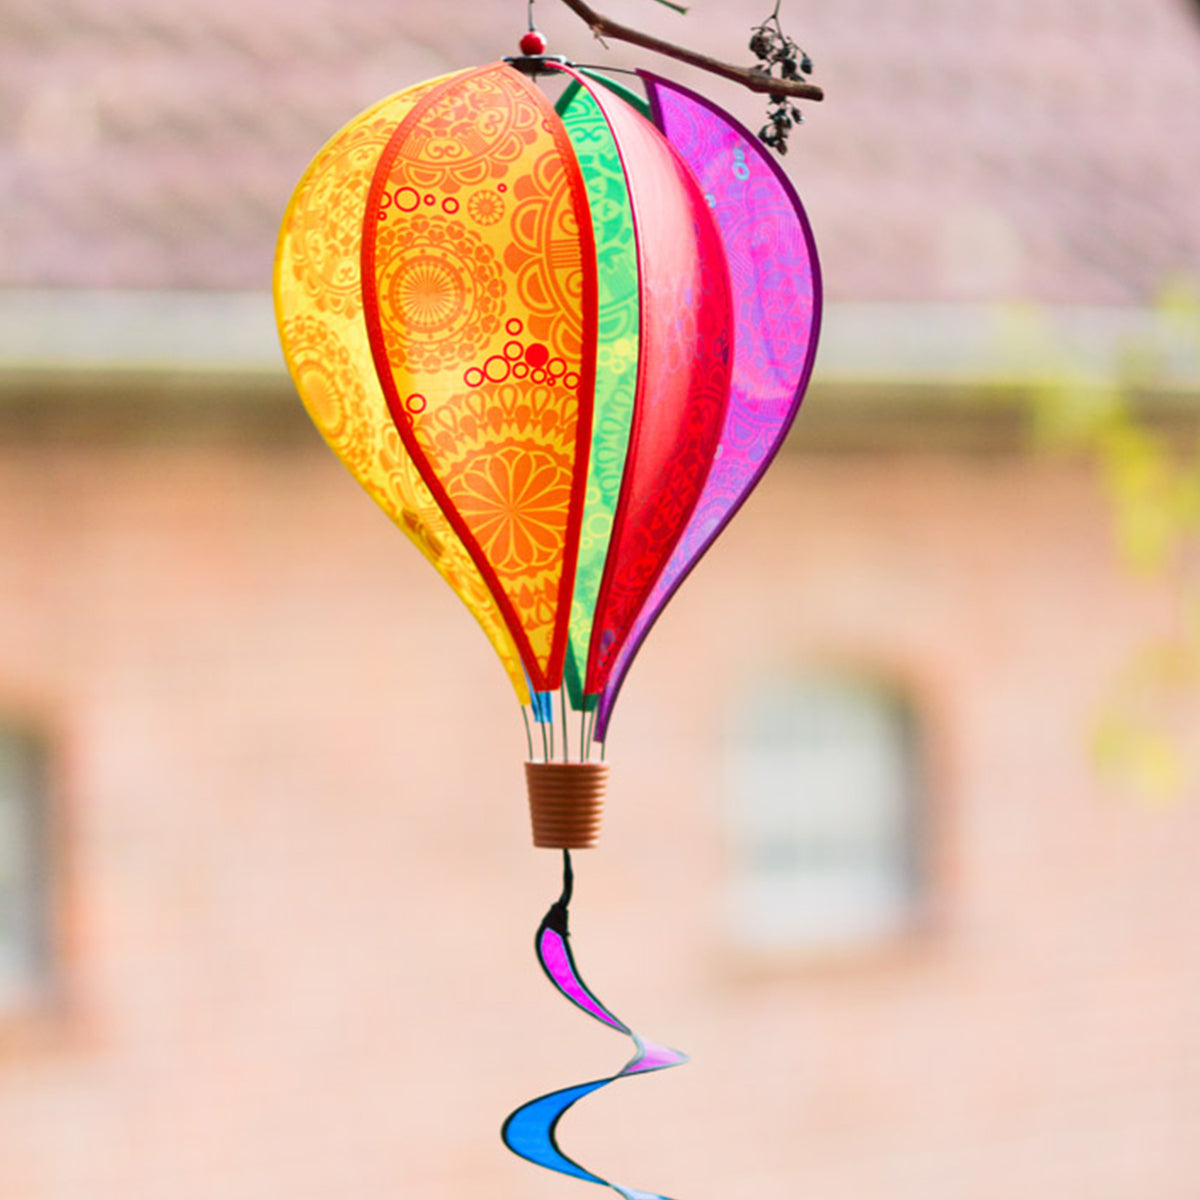 HQ Windspiel Heißluftballon HQ Hot Air Balloon Twist Victorian Style Windsack Garten Dekoration